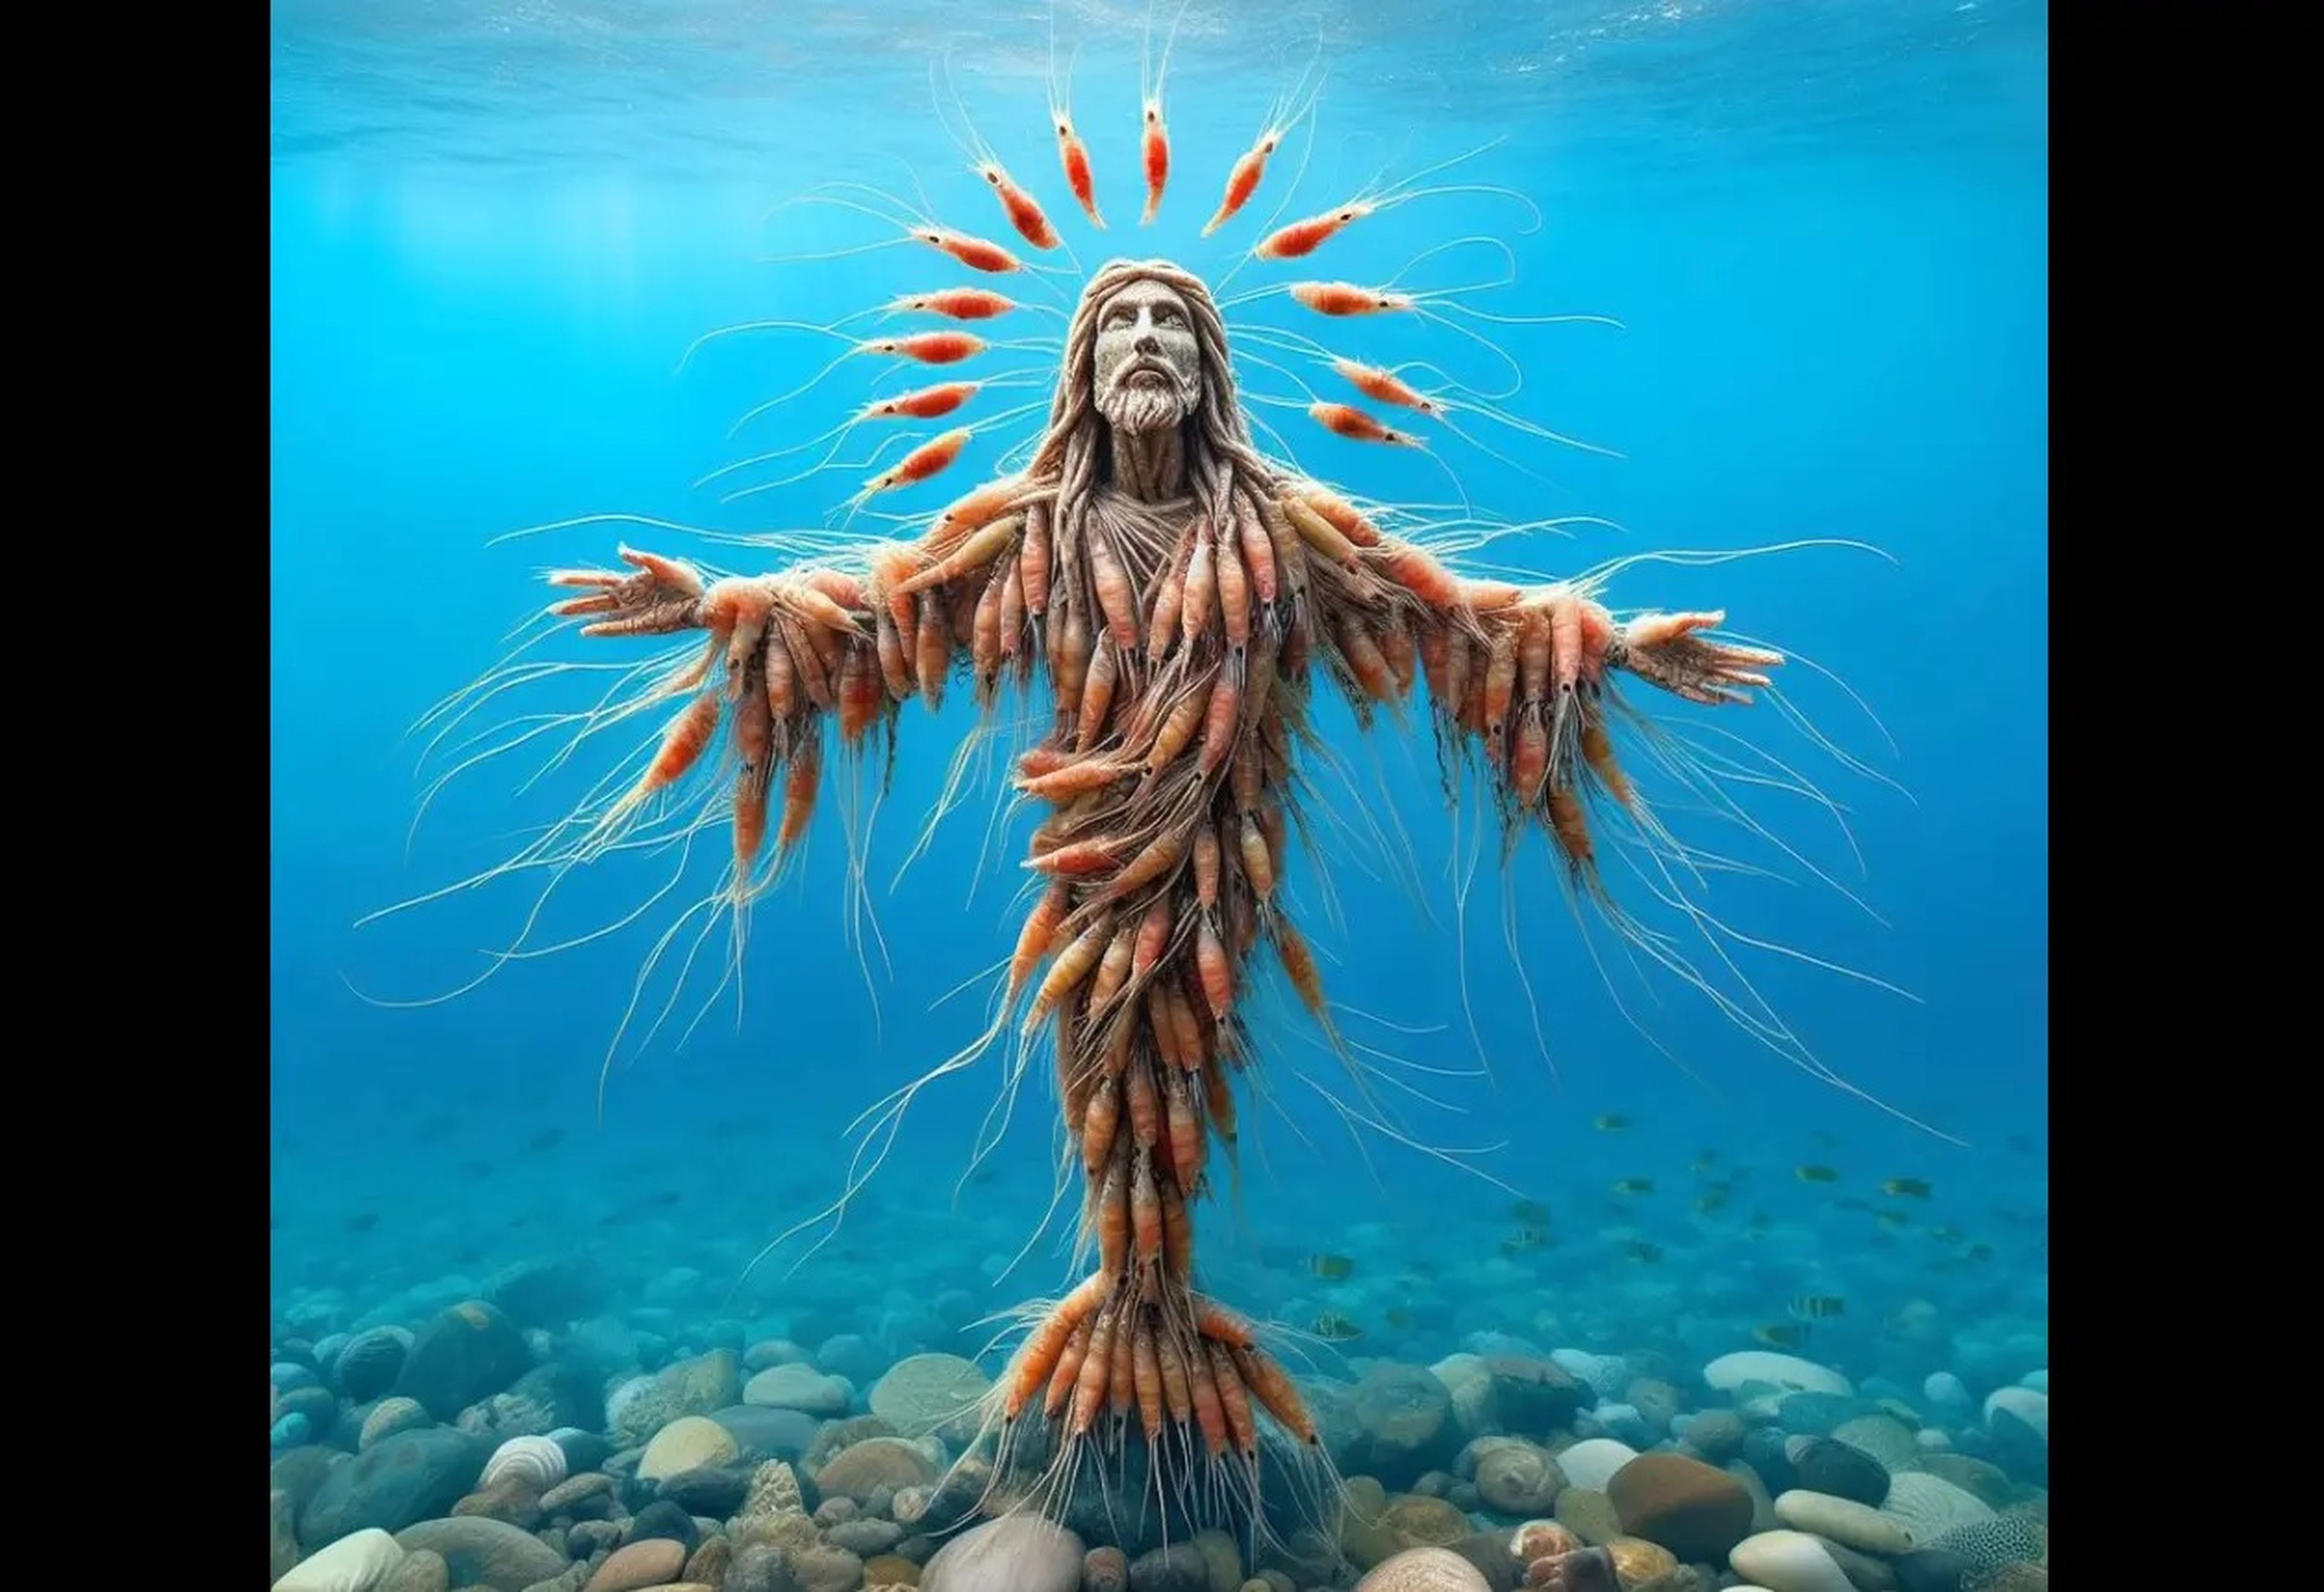 Jesús se presenta en múltiples formas crustáceas en la página de IA generativa llamada Love God & God Love You en Facebook